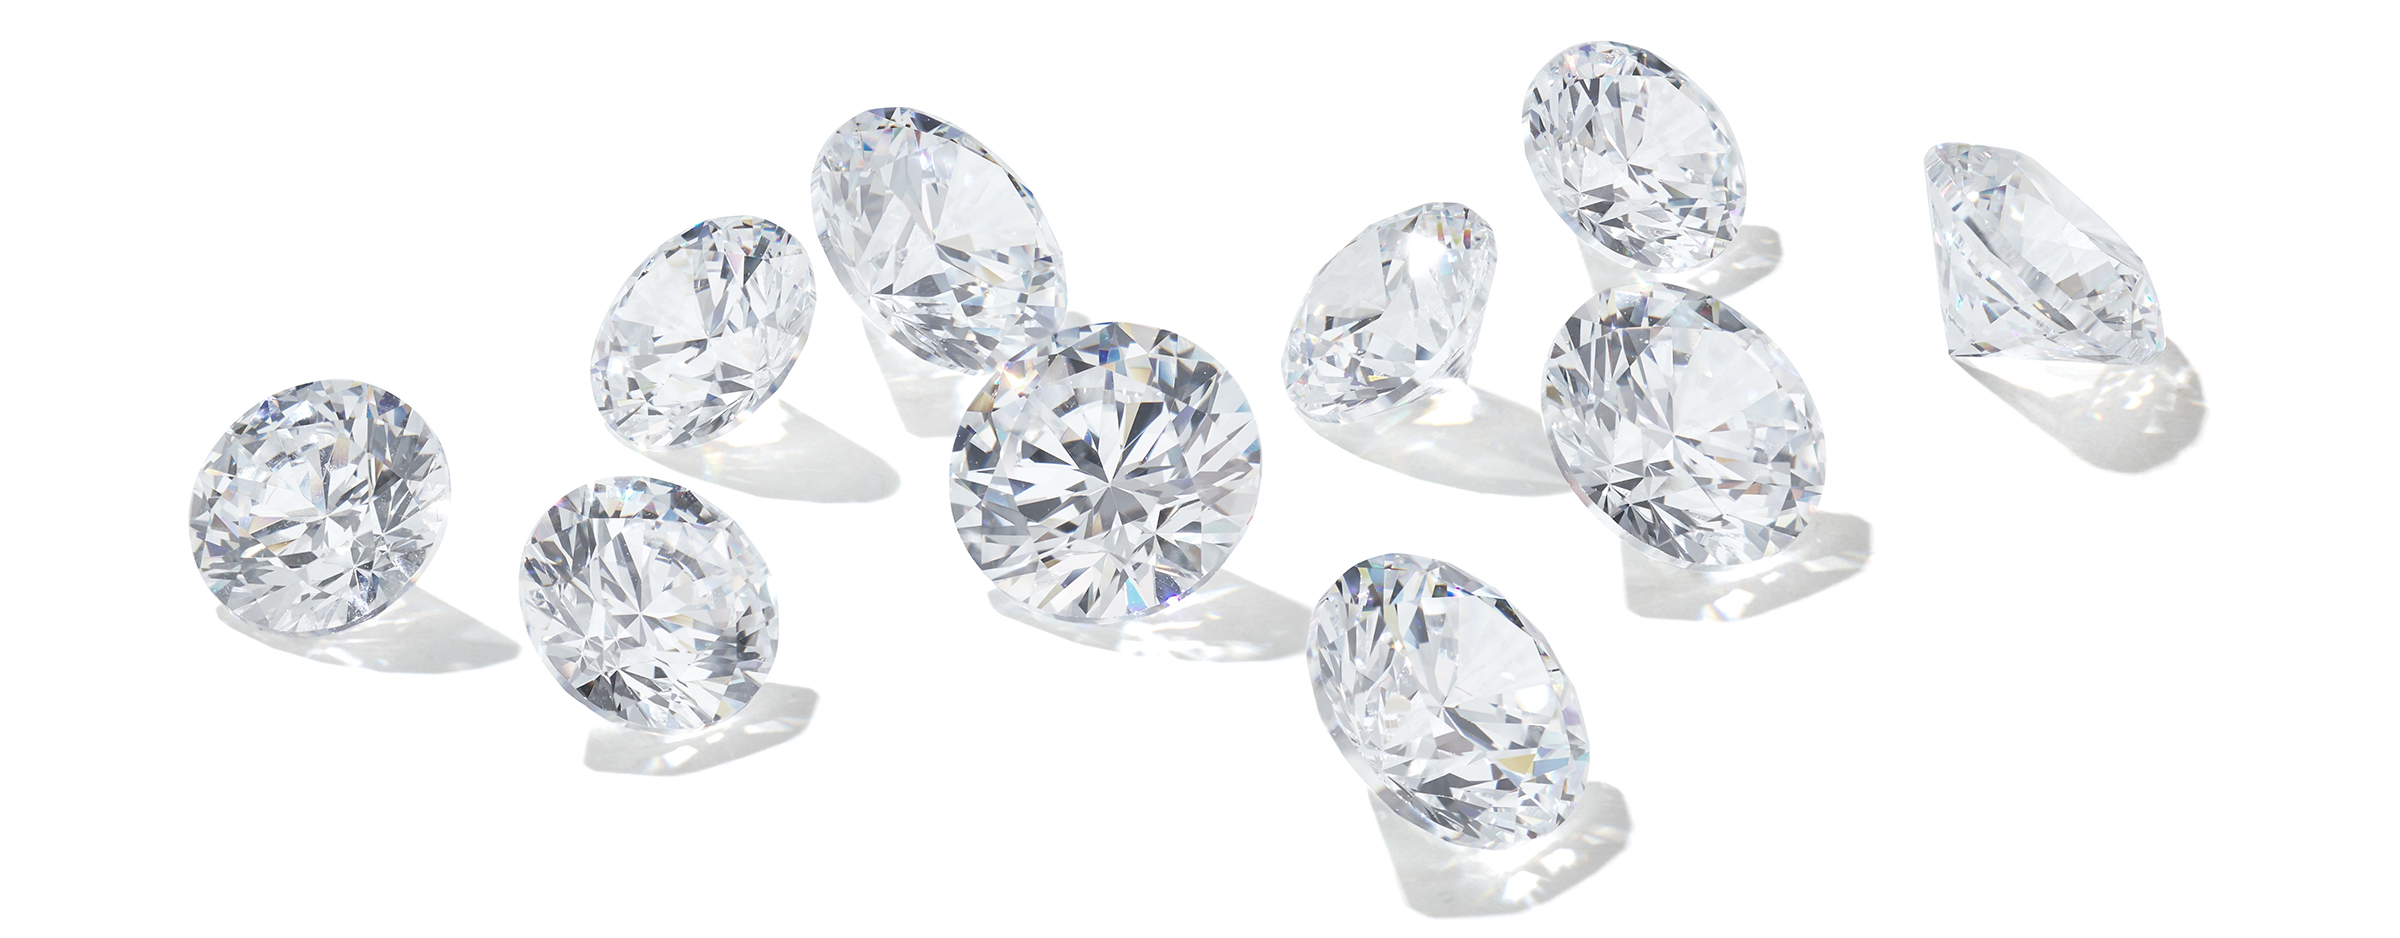 Các viên kim cương, đá quý